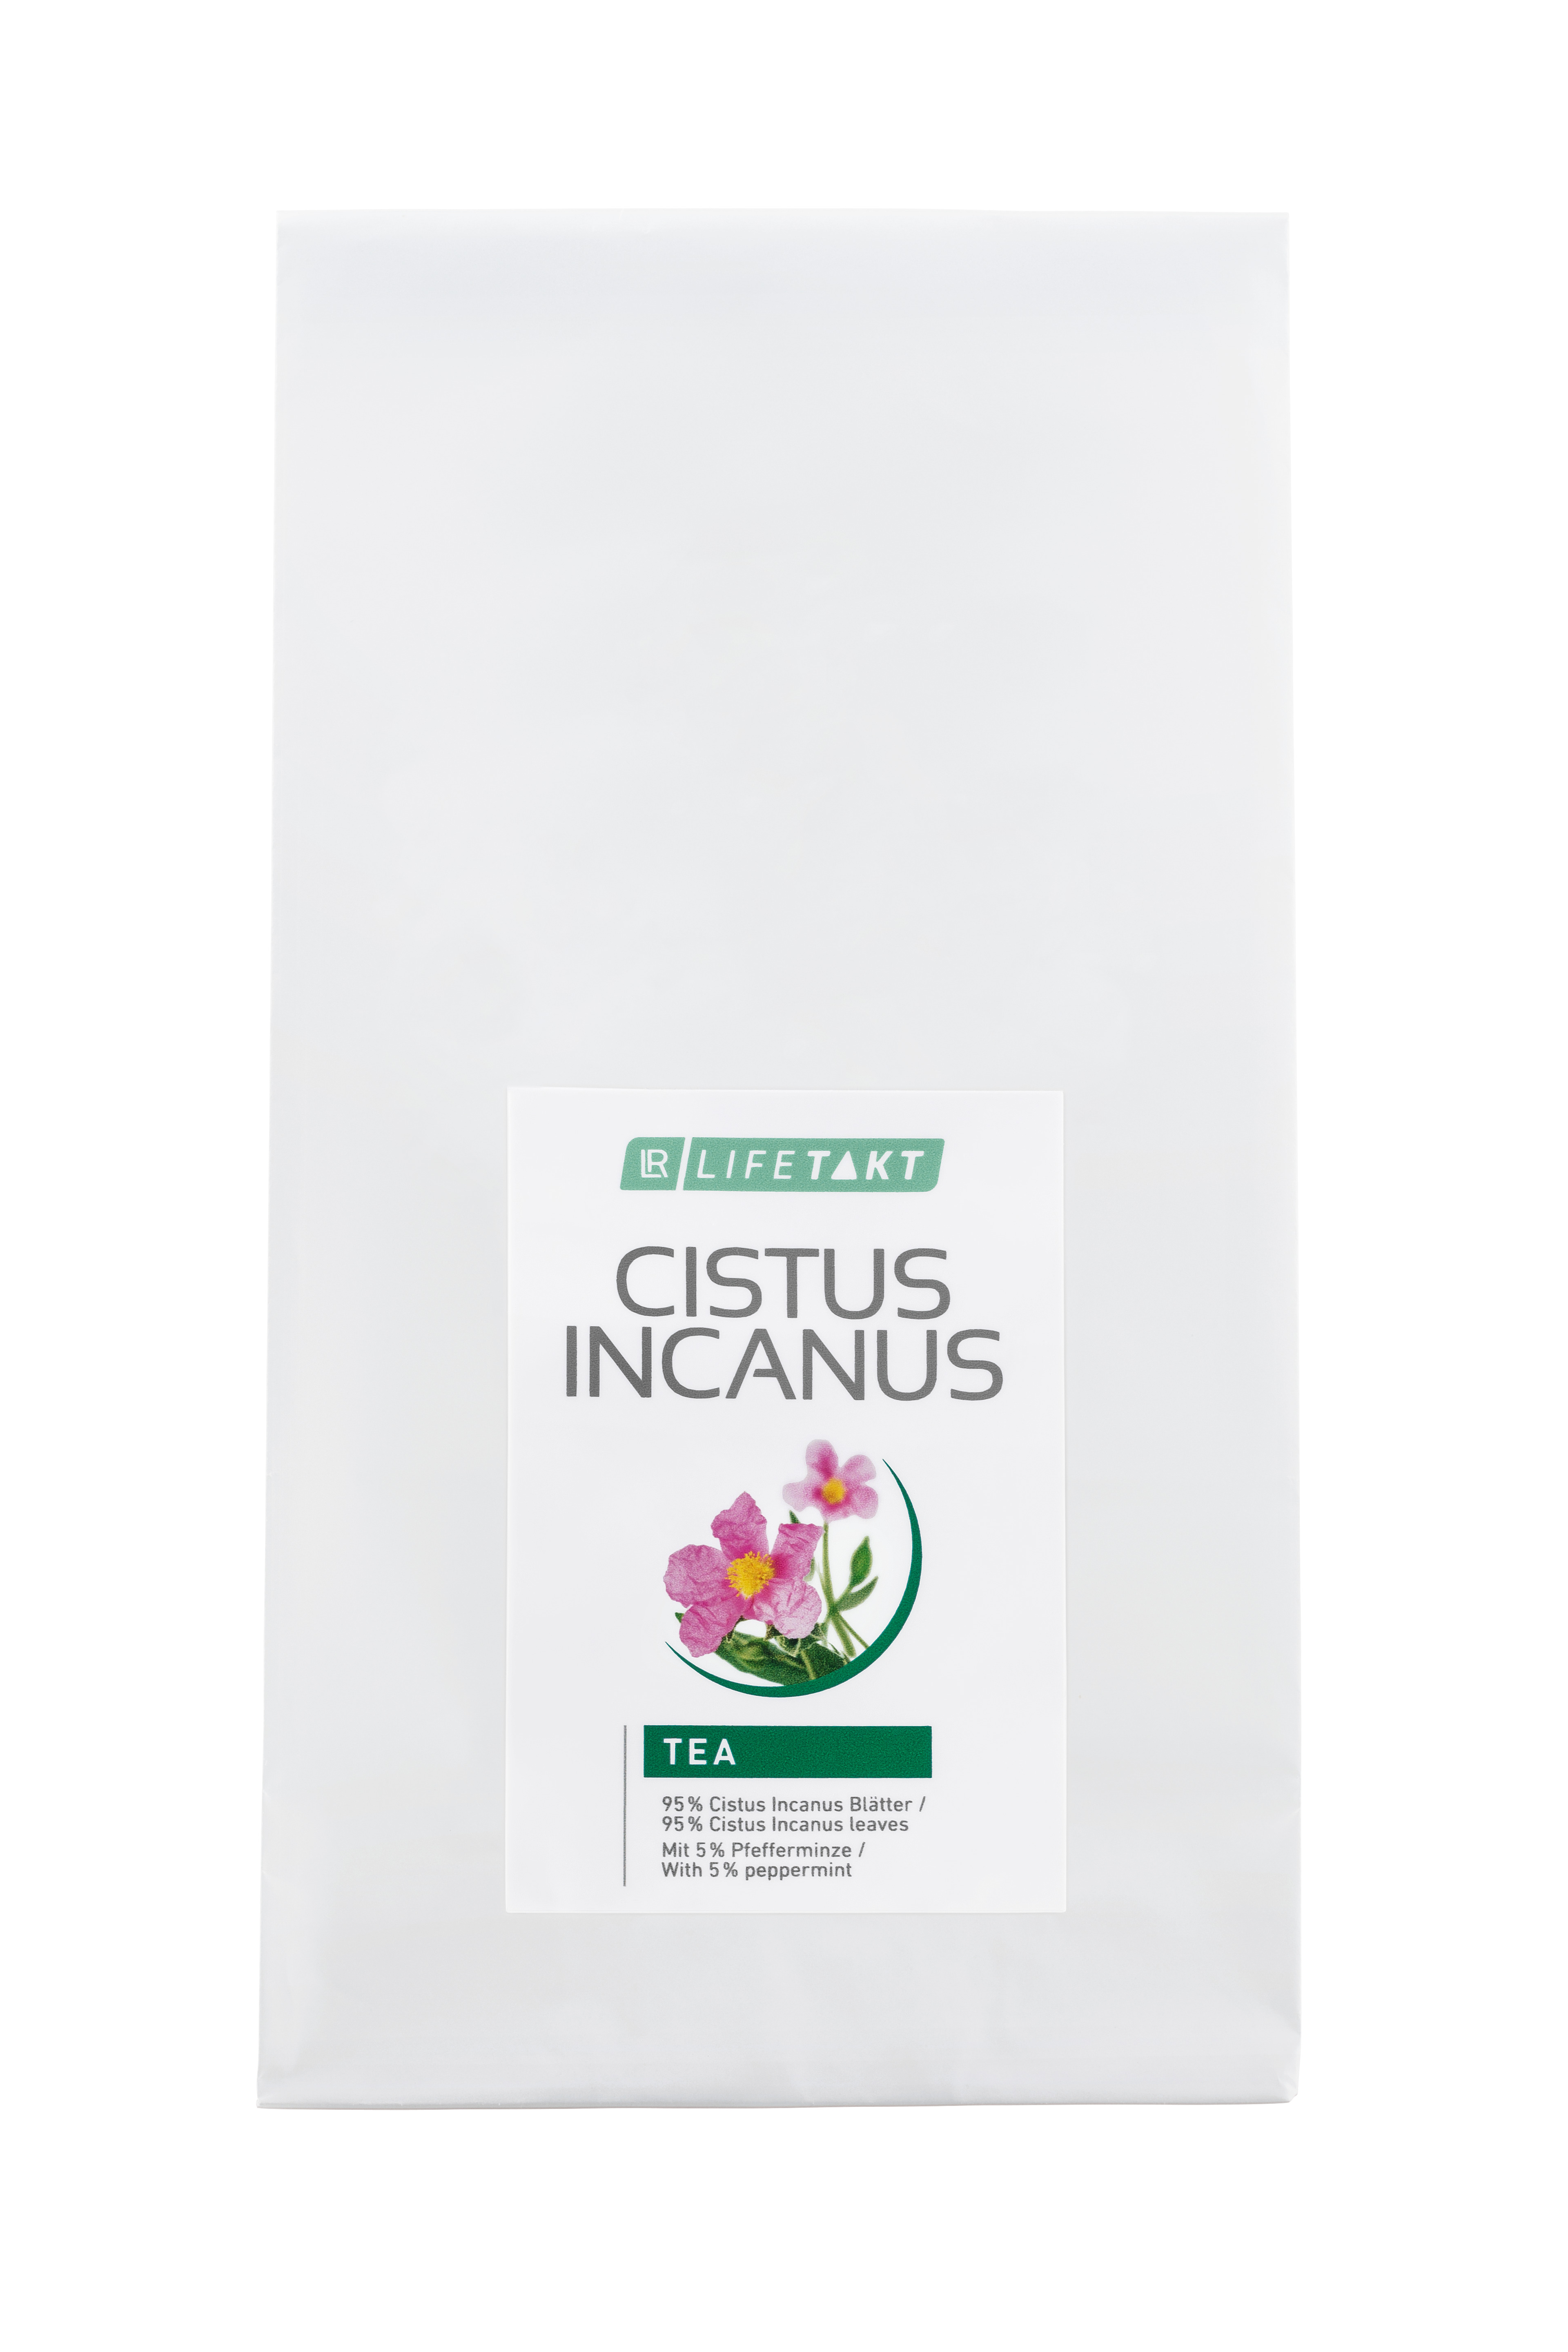 Cistus Incanus Tea